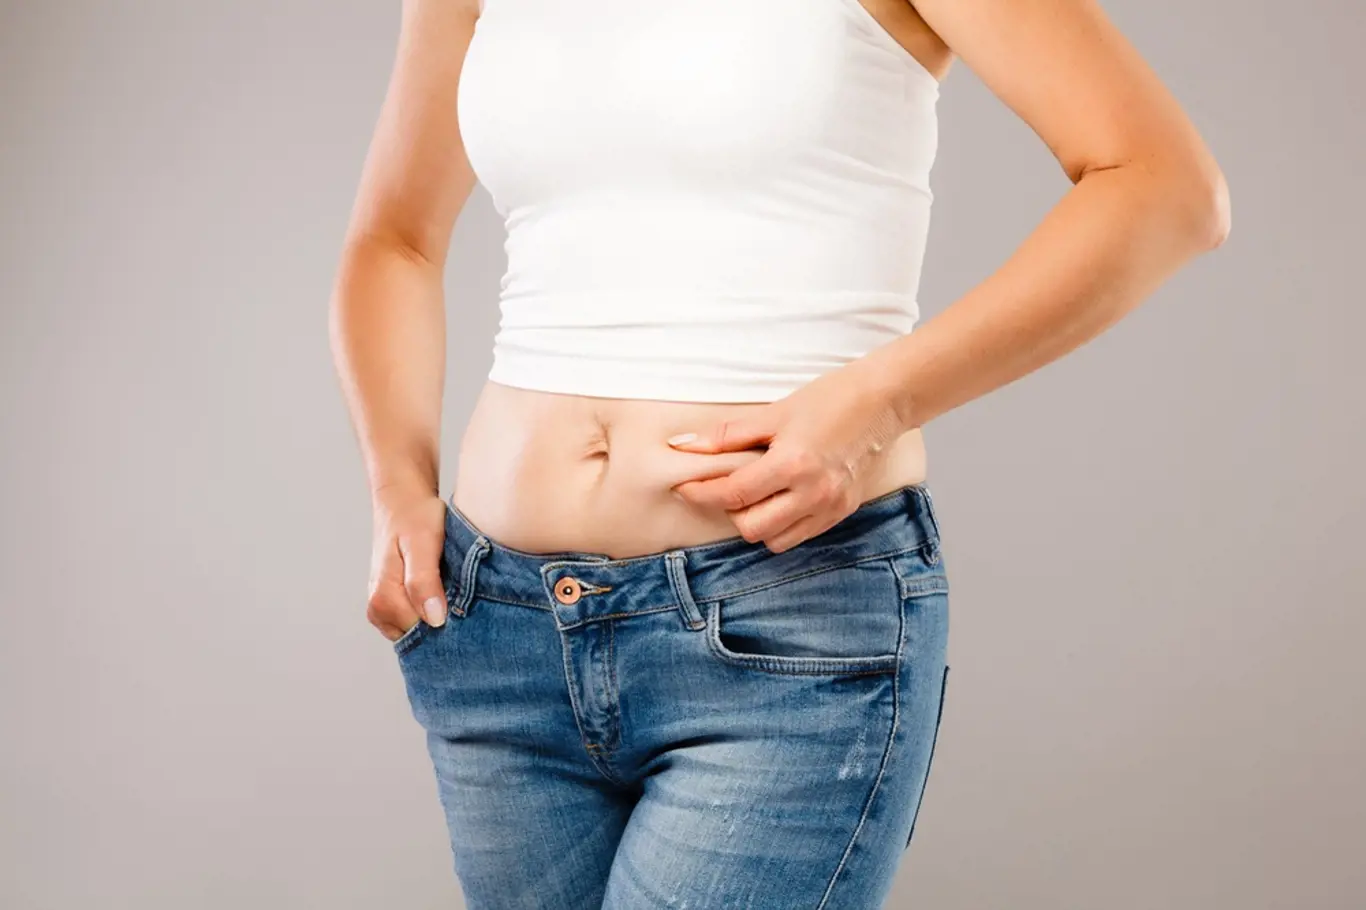 Máte pocit, že vaše břicho je během menstruace větší?